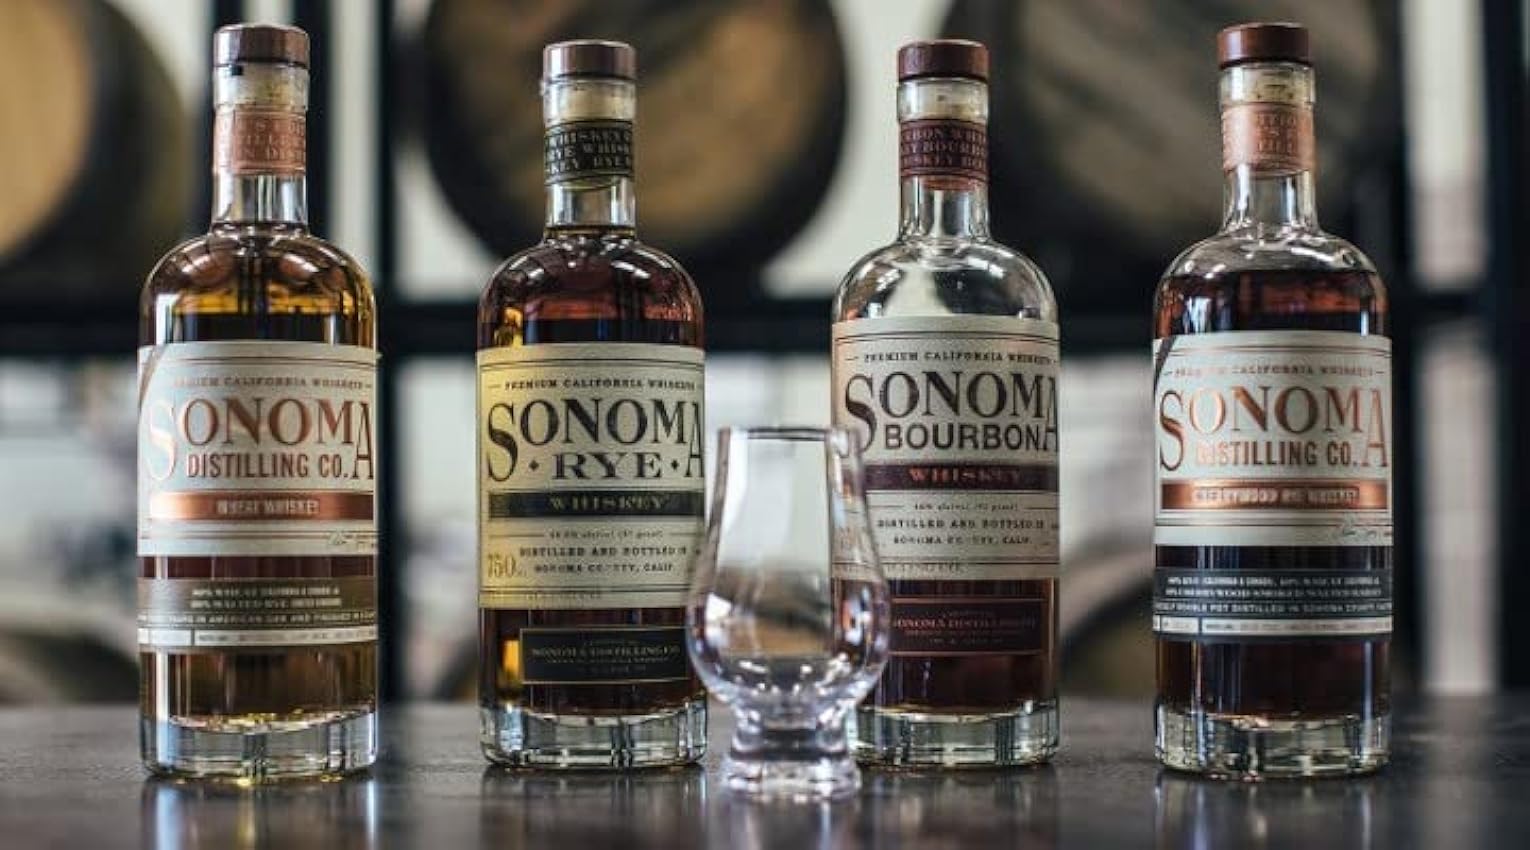 SONOMA - Rye Whiskey - 46,5 % Alcool - Origine : États-Unis/Californie - Bouteille 70 cl L5r6yzLA